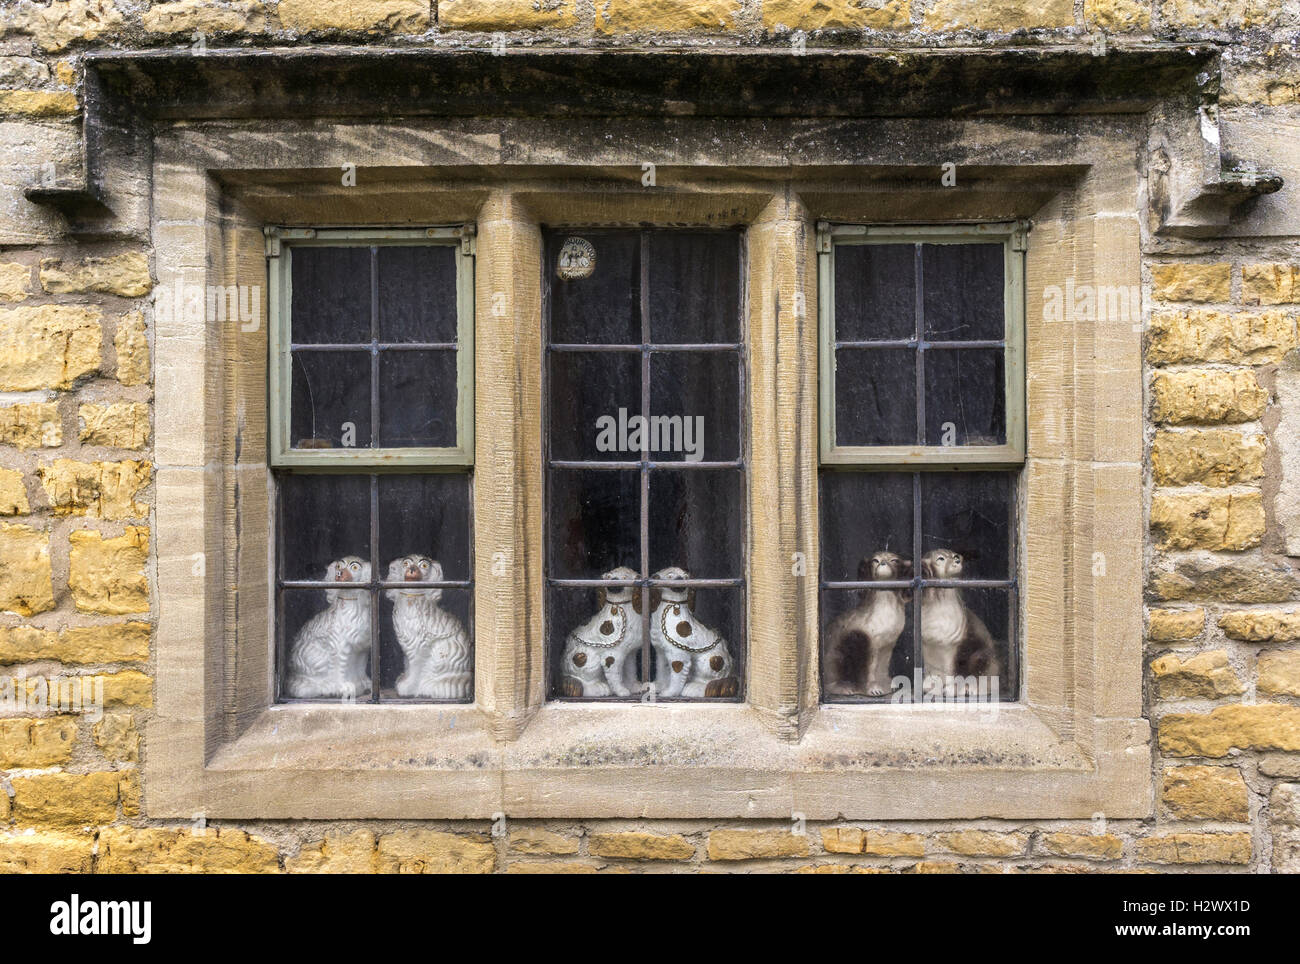 Stafforshire cani in ceramica in un diciassettesimo cen. finestra, Bourton sull'acqua, Cotswolds, Glousteshire, Inghilterra. Foto Stock